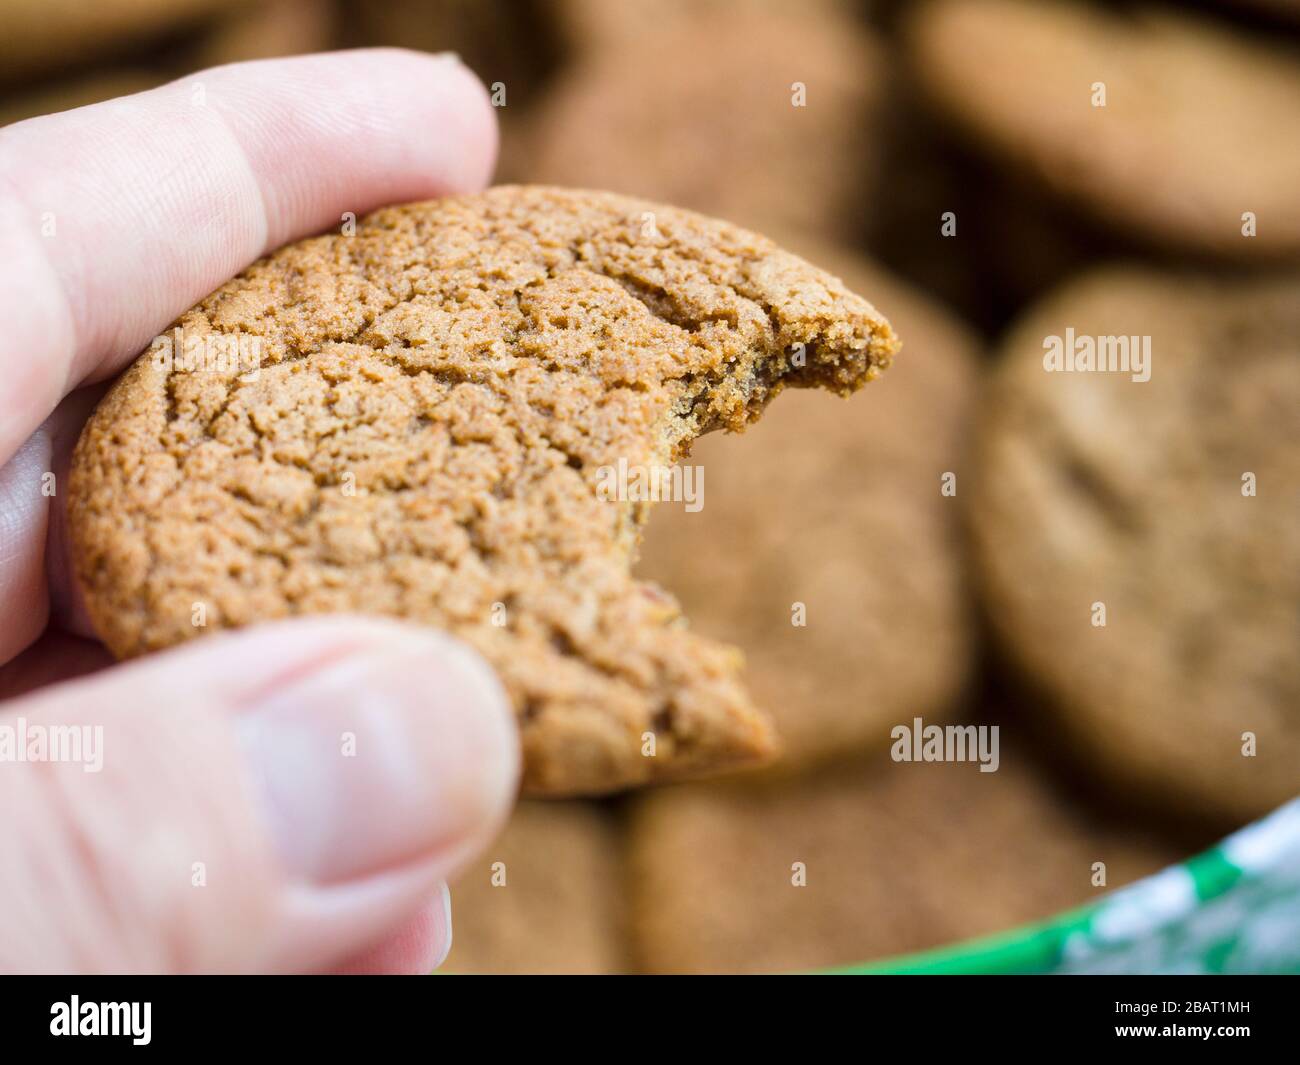 Una galleta de jengibre con un bocado: Una mano contiene una galleta de jengibre recién picada. Más cookies están en segundo plano. Foto de stock